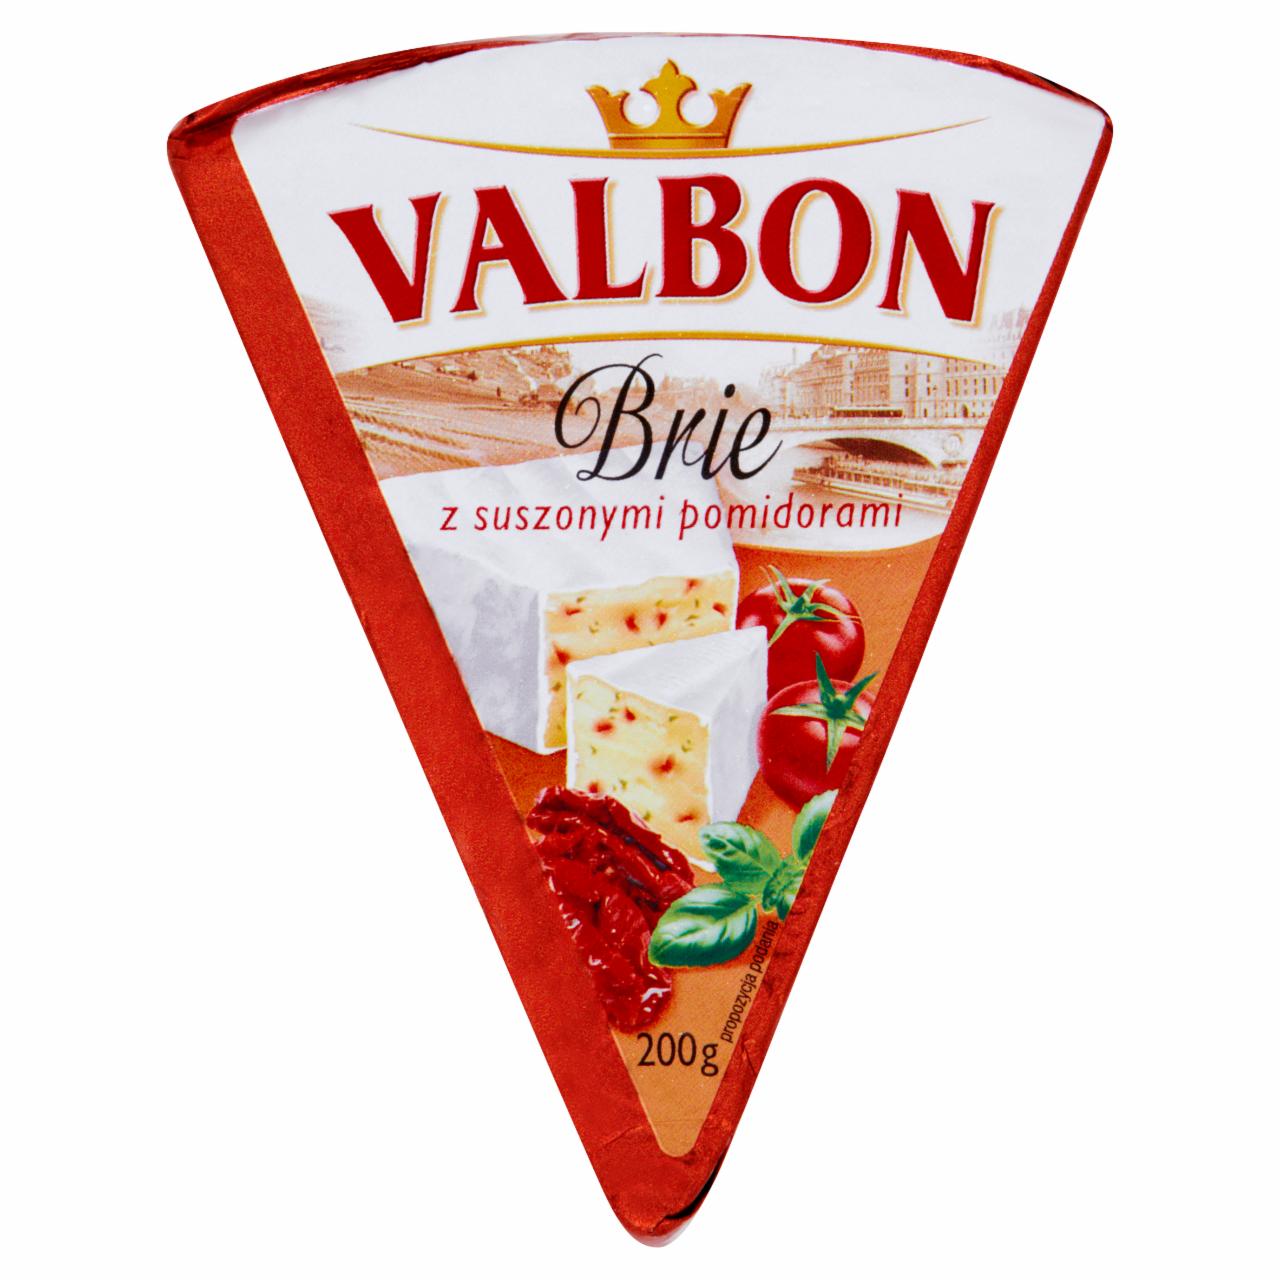 Zdjęcia - Valbon Brie z suszonymi pomidorami 200 g